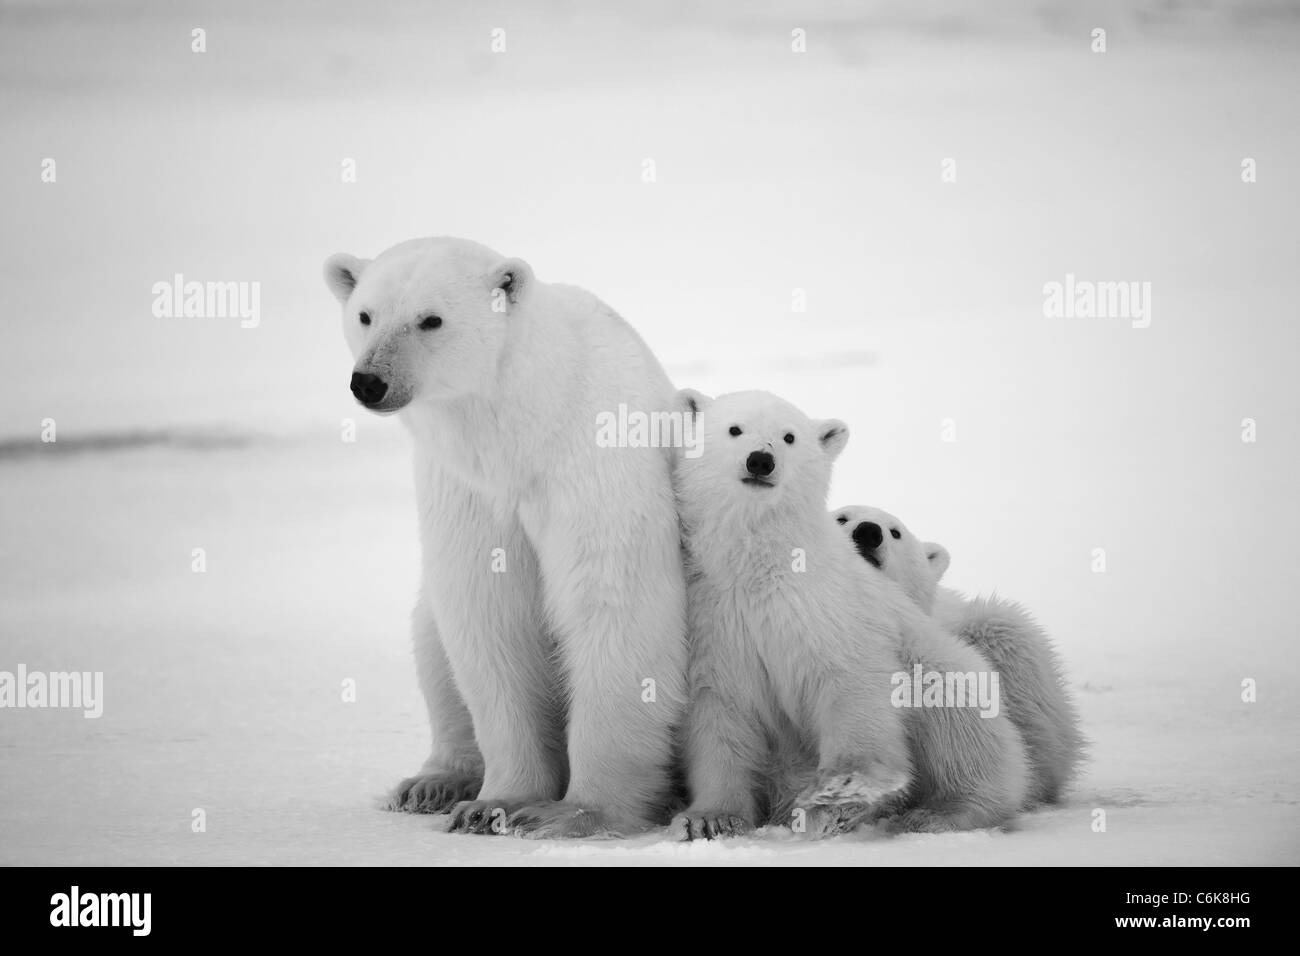 Weiße Bärin mit jungen. Eine Polar Bärin mit zwei kleinen Bärenjungen. Rund um Schnee. Schwarz / weiß Foto. Stockfoto